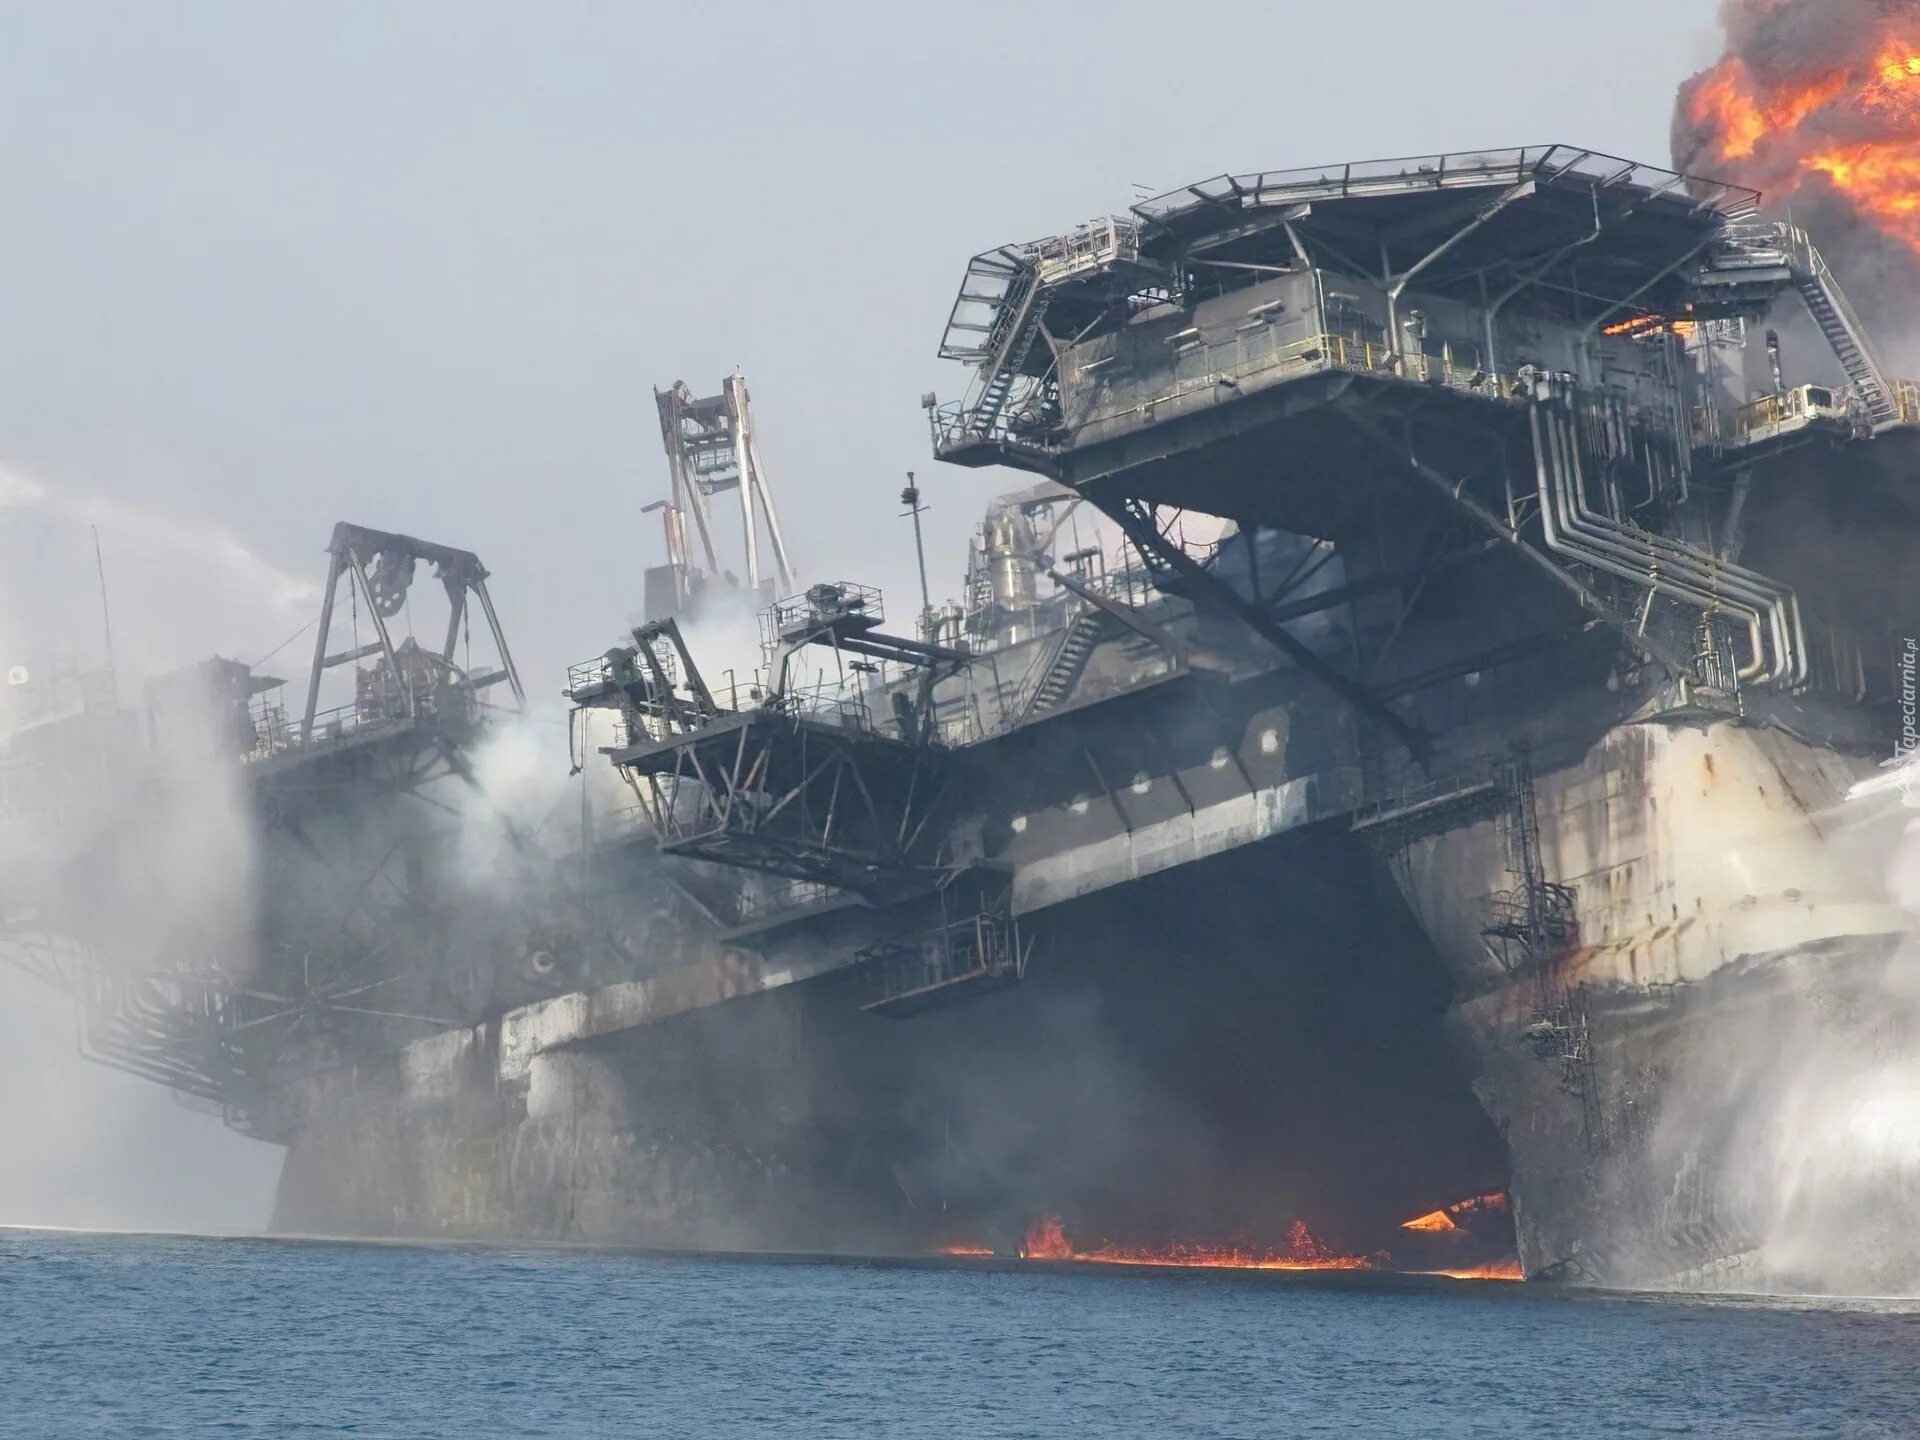 Взрыв нефтяной платформы Deepwater Horizon 2010. Авария на нефтяной платформе в мексиканском заливе 2010. Глубоководный Горизонт катастрофа 2010. Авария на нефтяной платформе Deepwater Horizon. 15 апреля 2010